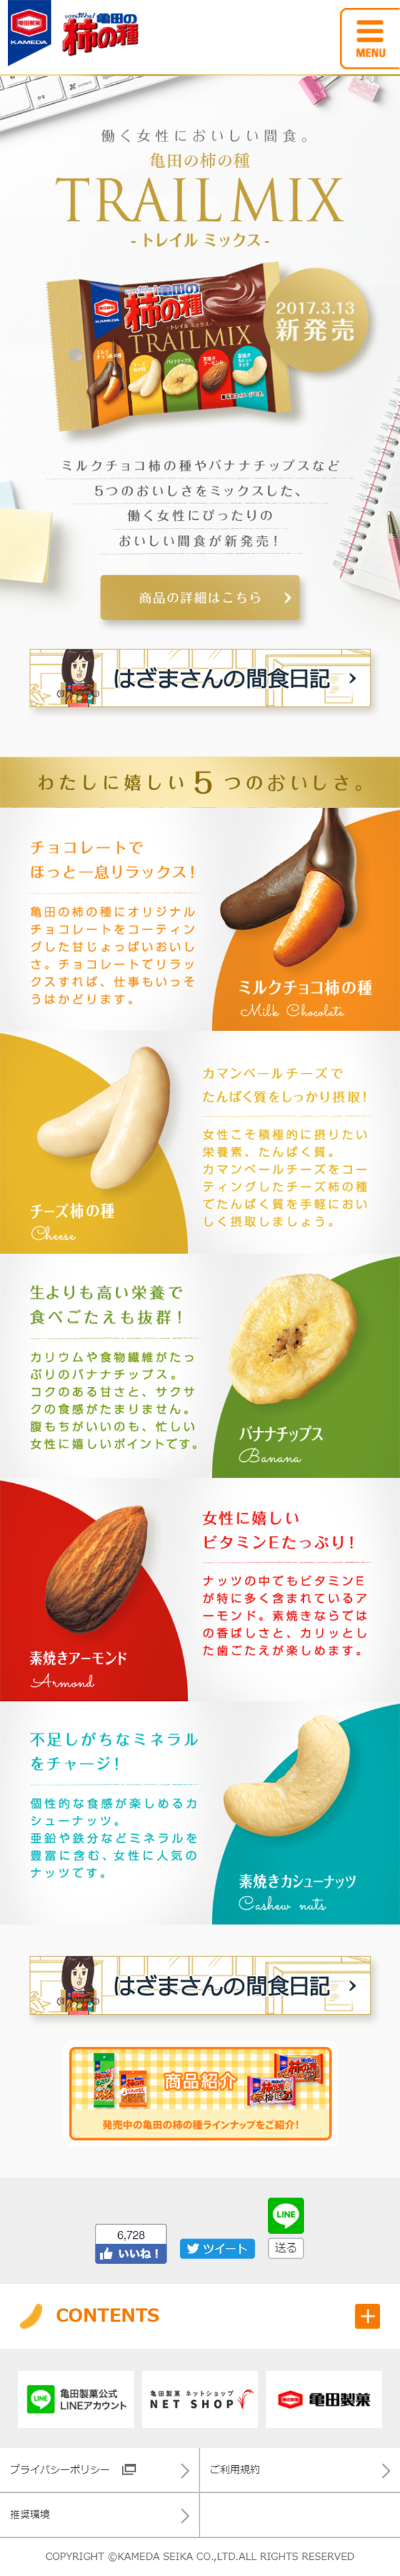 亀田の柿の種『TRAIL MIX』_sp_1